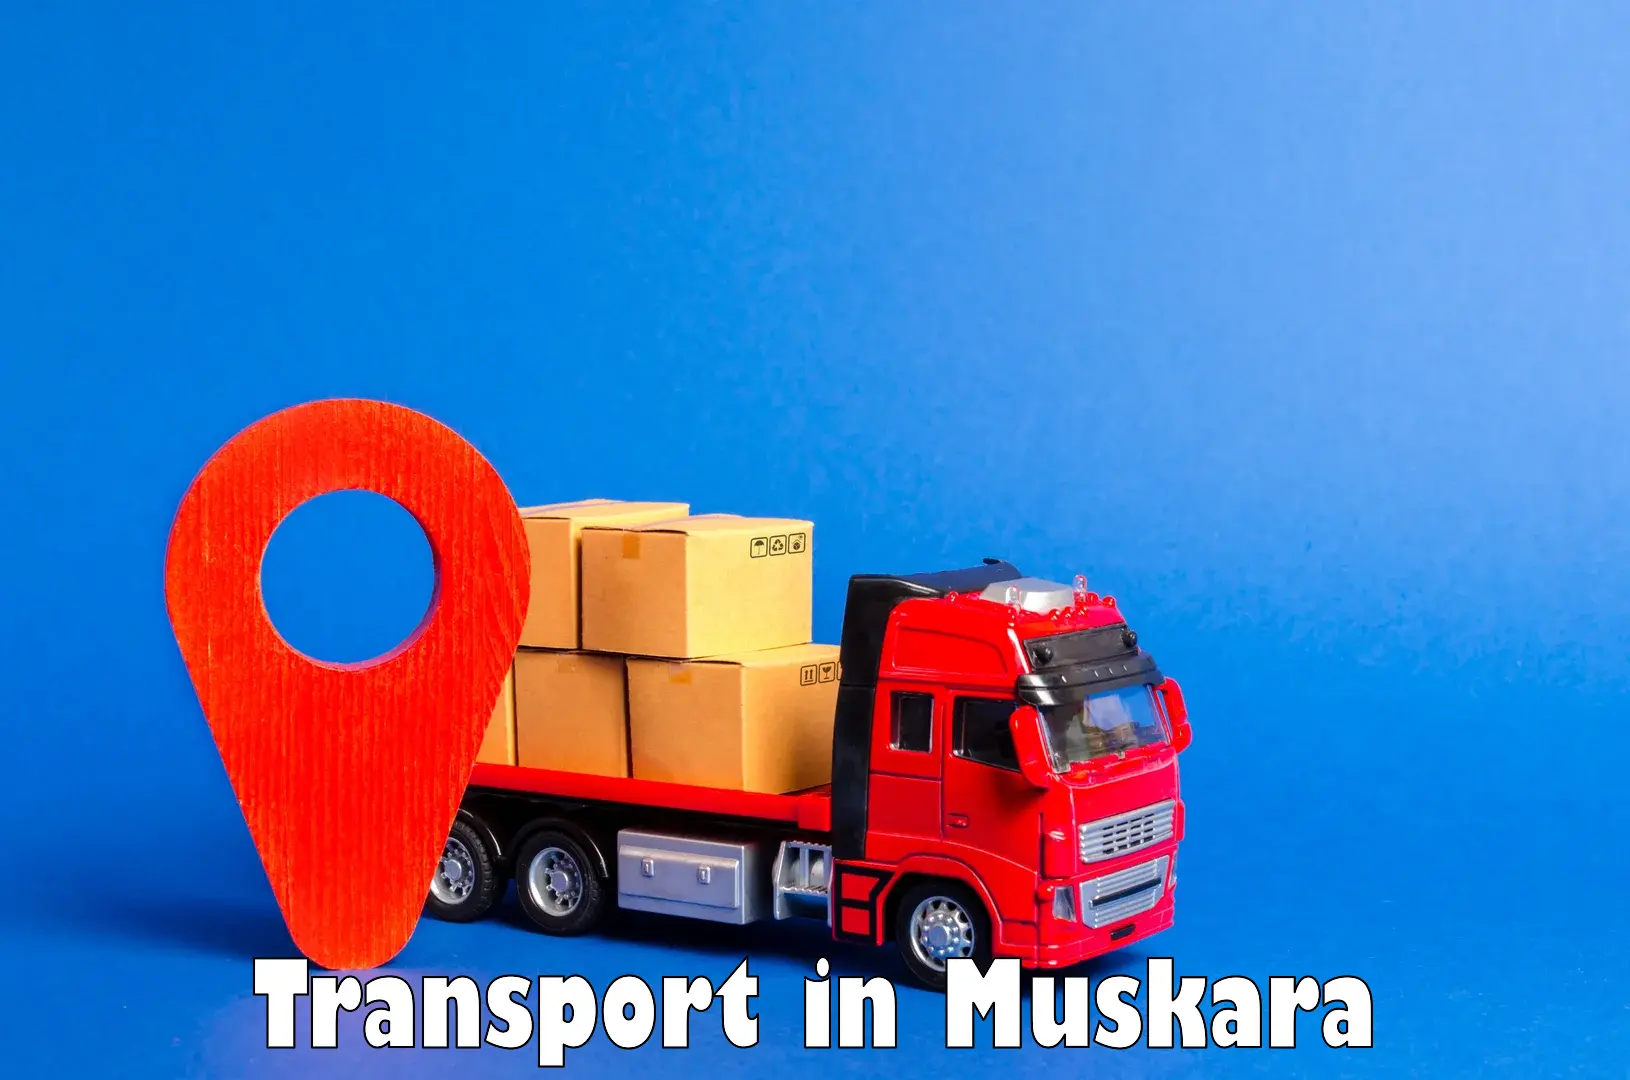 Online transport booking in Muskara